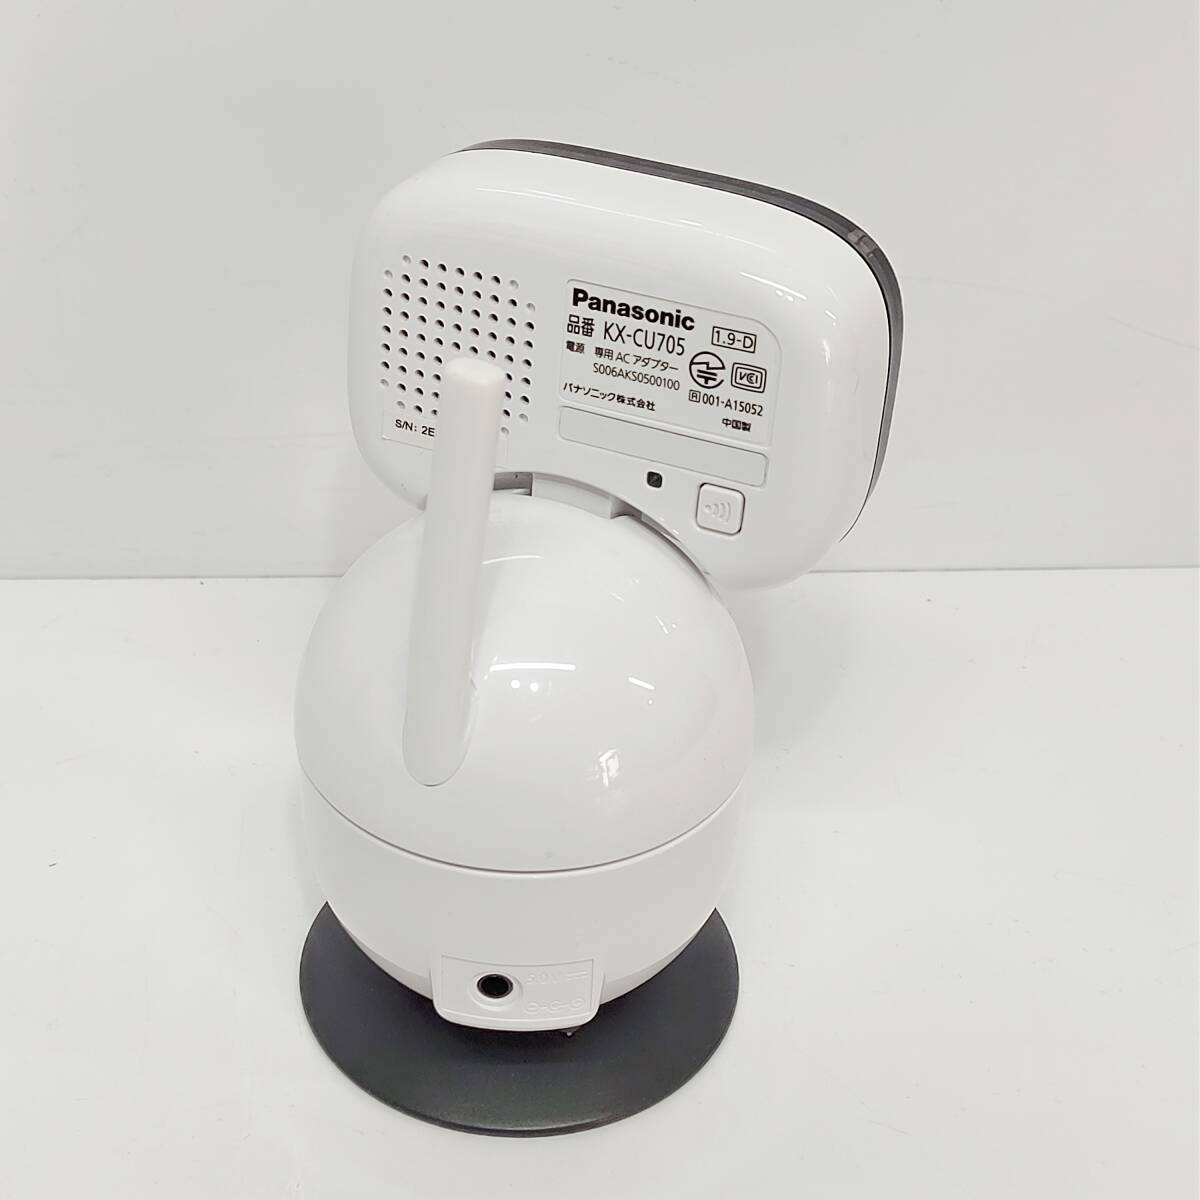 ●パナソニック KX-CU705 ベビーモニター Panasonic ワイヤレス ベビーカメラ 寝室 赤ちゃん 見守る ナイトモード搭載 S3001_画像4